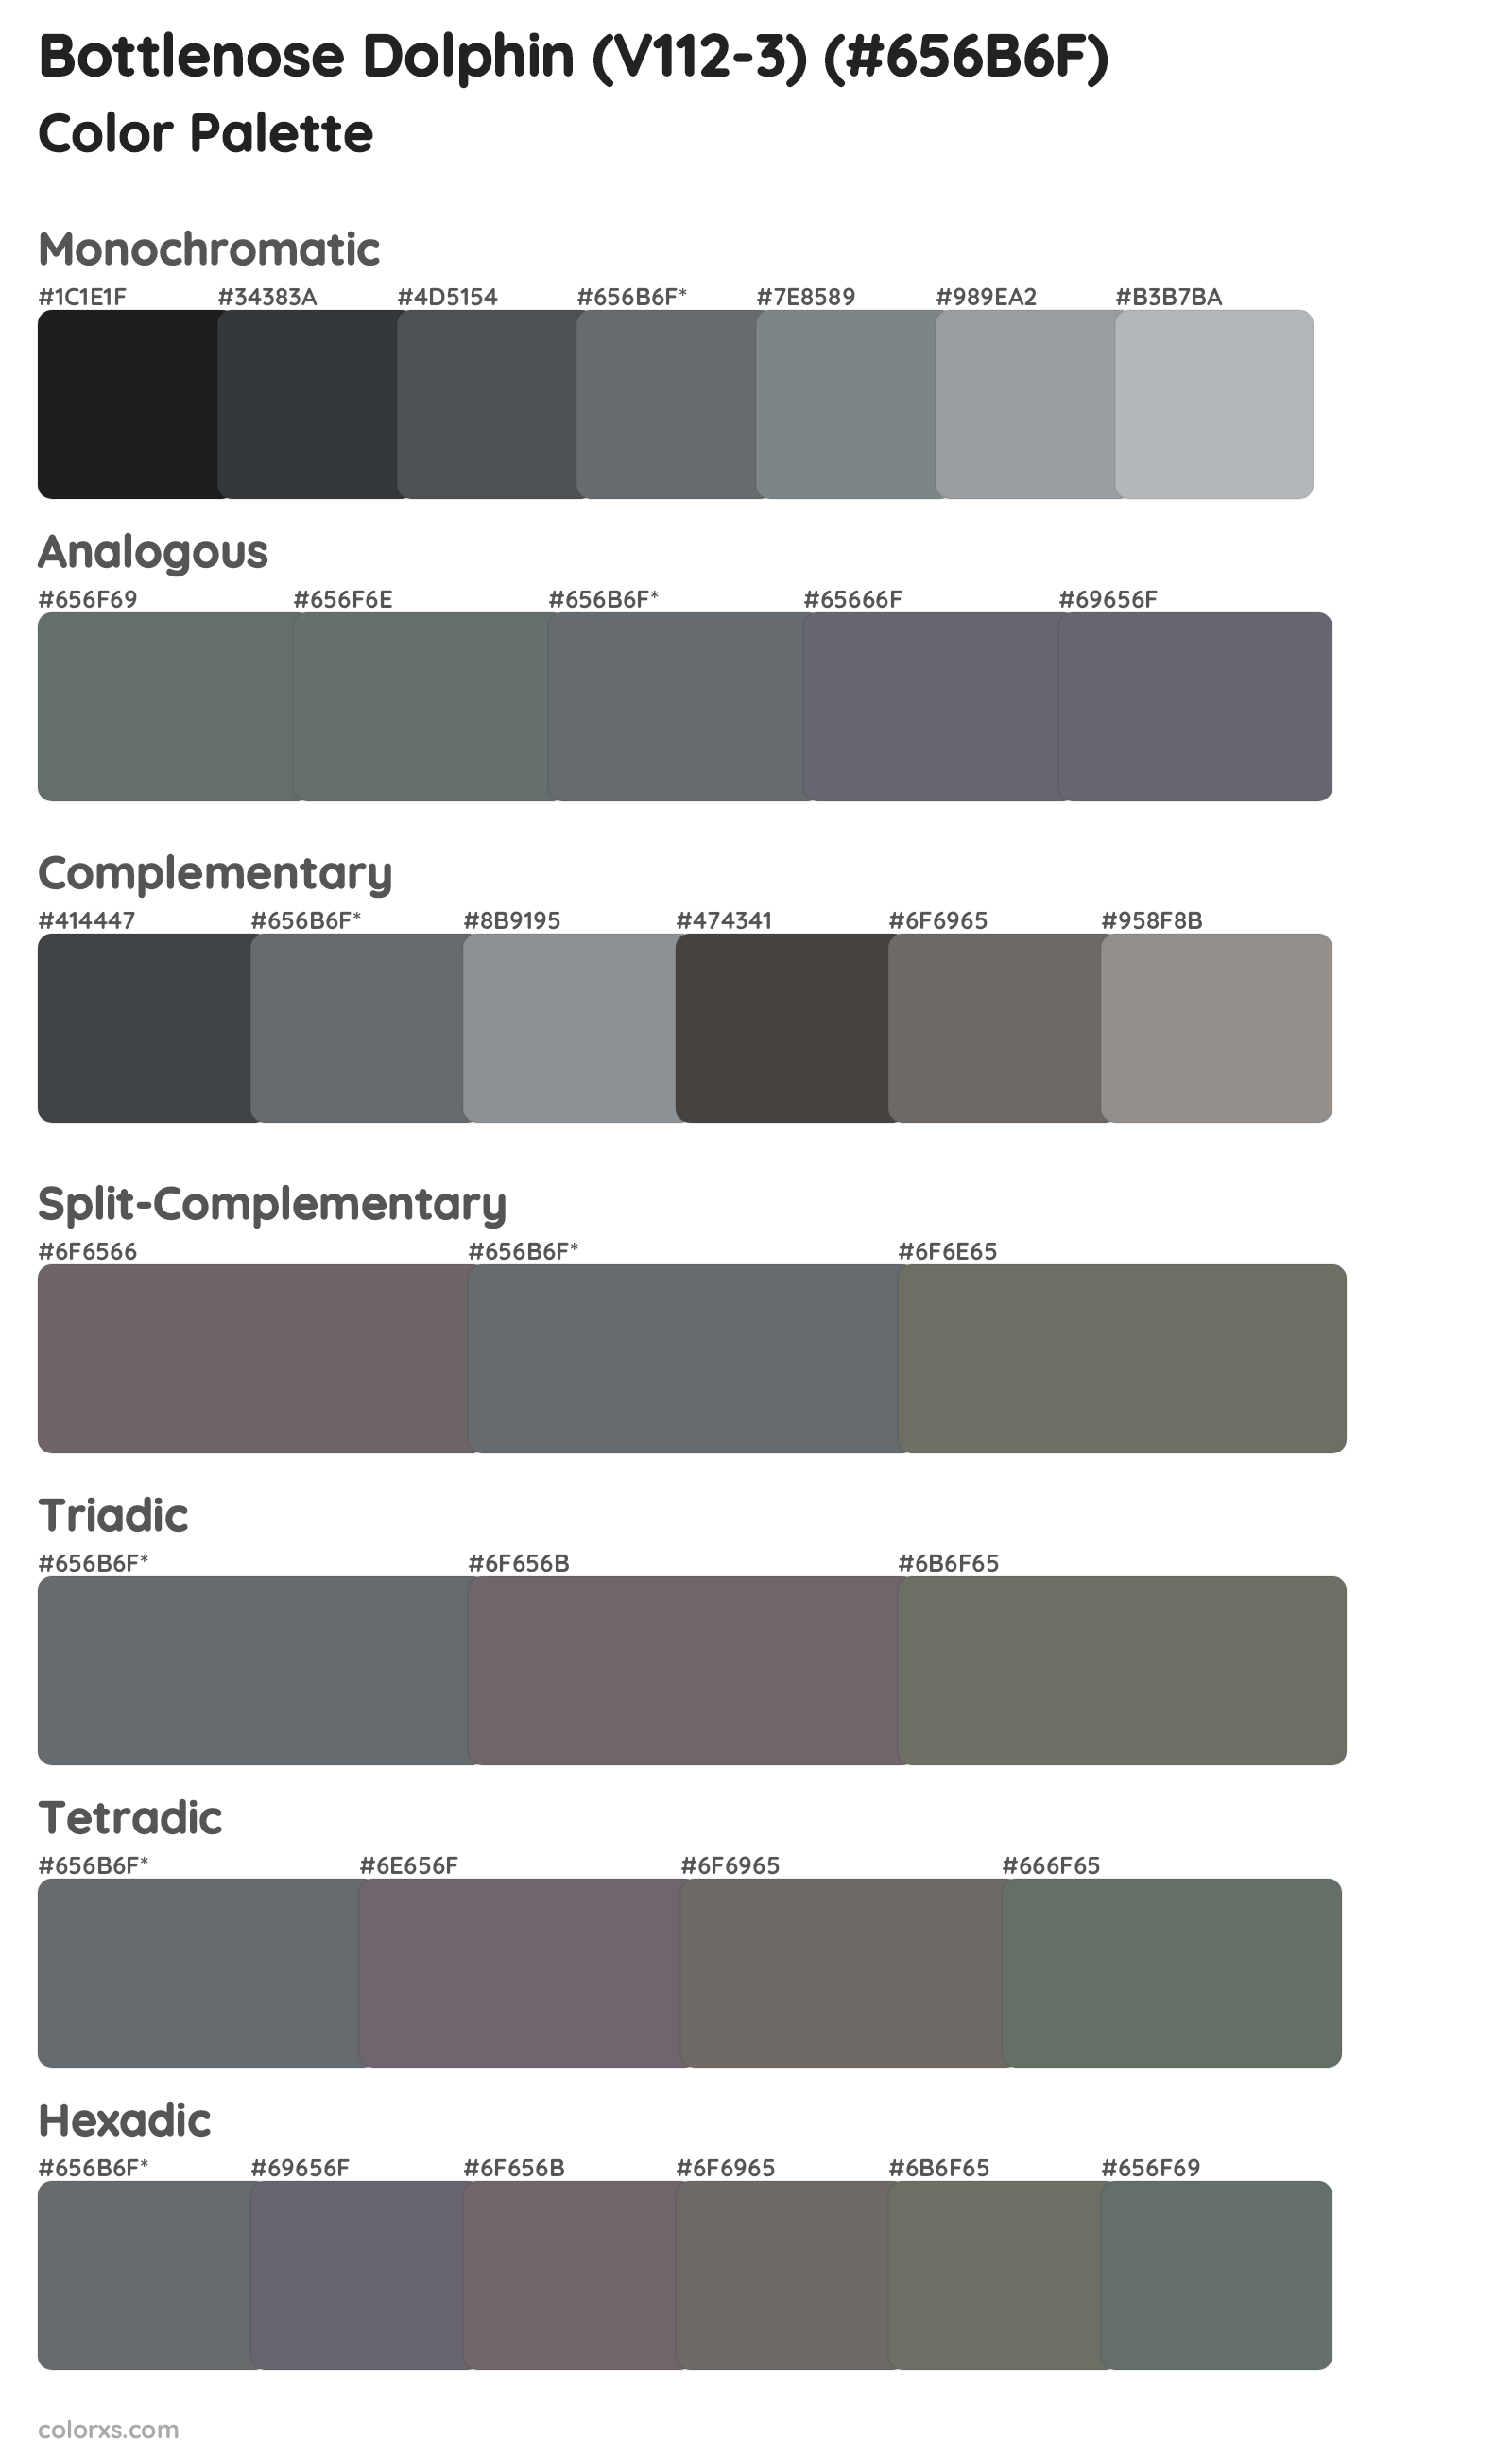 Bottlenose Dolphin (V112-3) Color Scheme Palettes